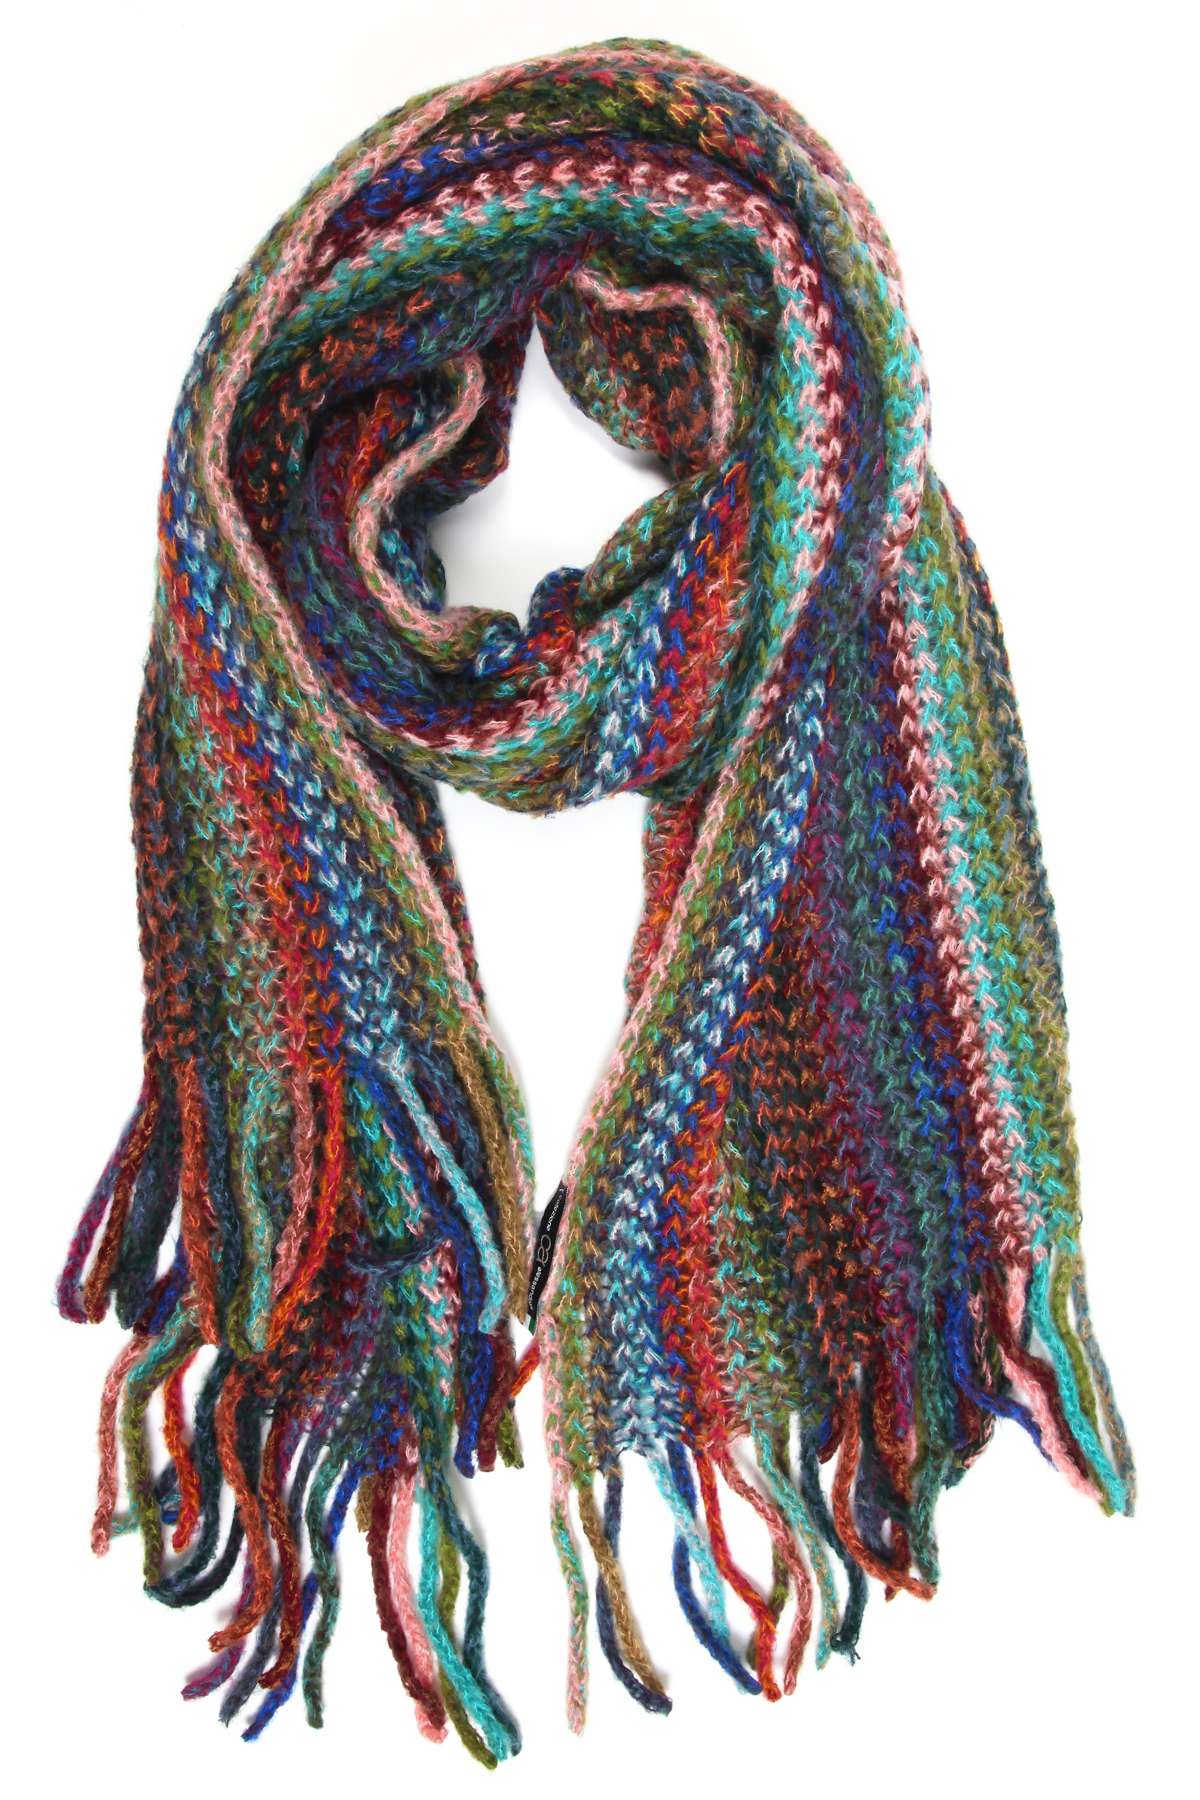 Шерстяной шарф, производство Италия.